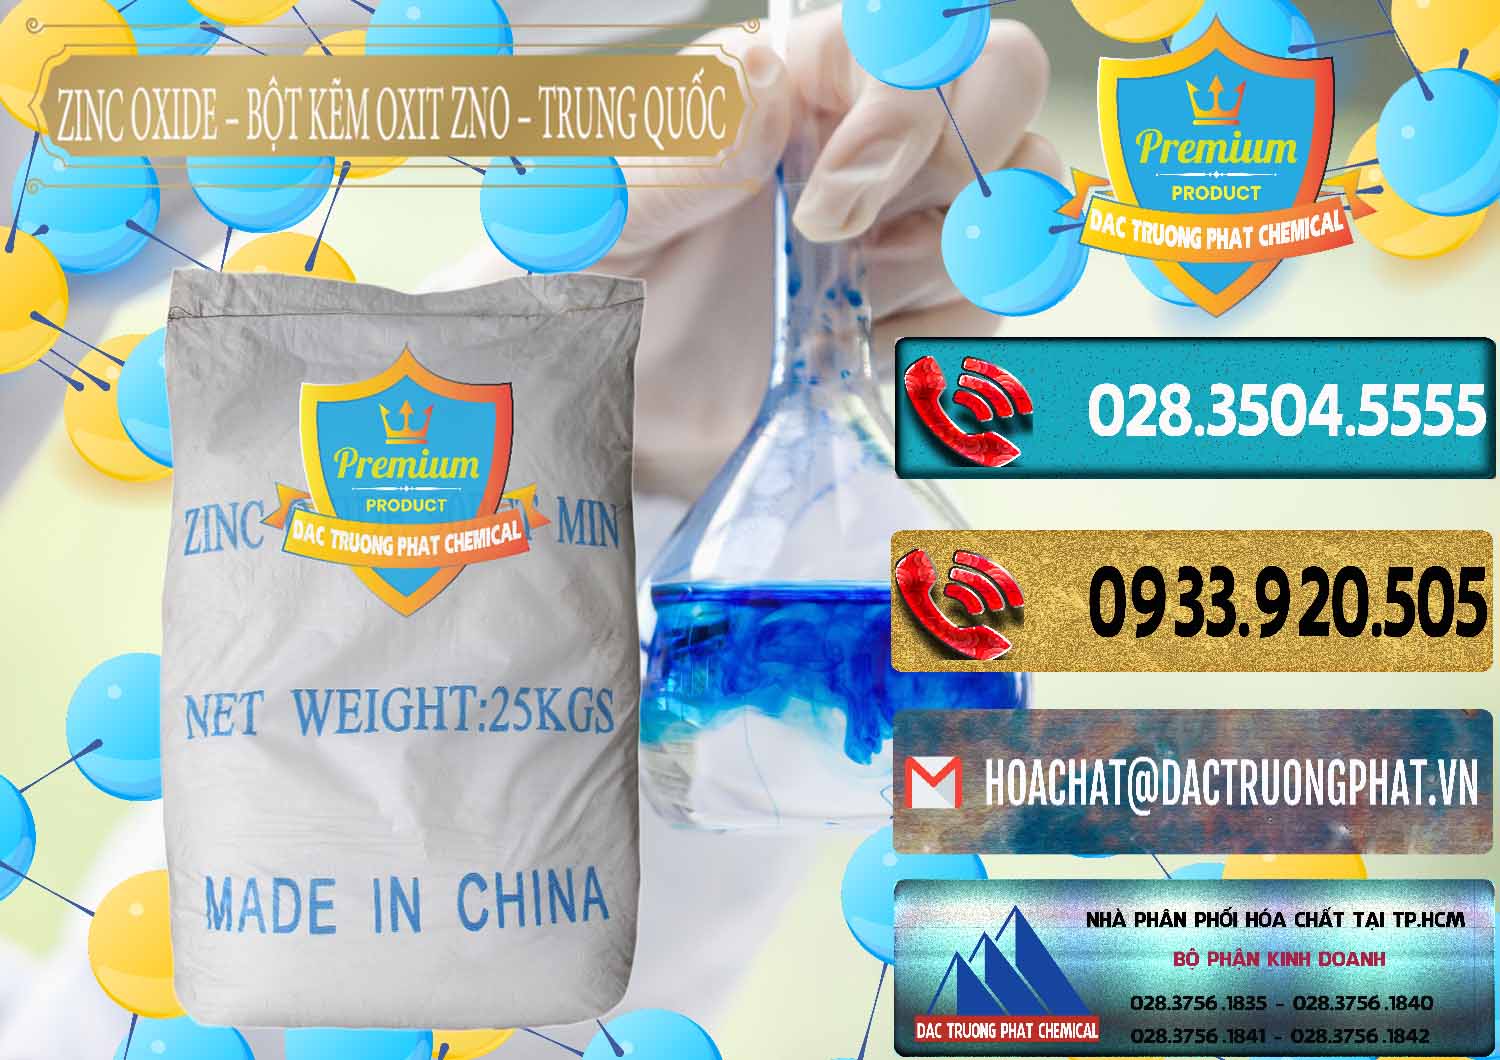 Công ty chuyên bán & cung ứng Zinc Oxide - Bột Kẽm Oxit ZNO Trung Quốc China - 0182 - Cty cung ứng - phân phối hóa chất tại TP.HCM - hoachatdetnhuom.com